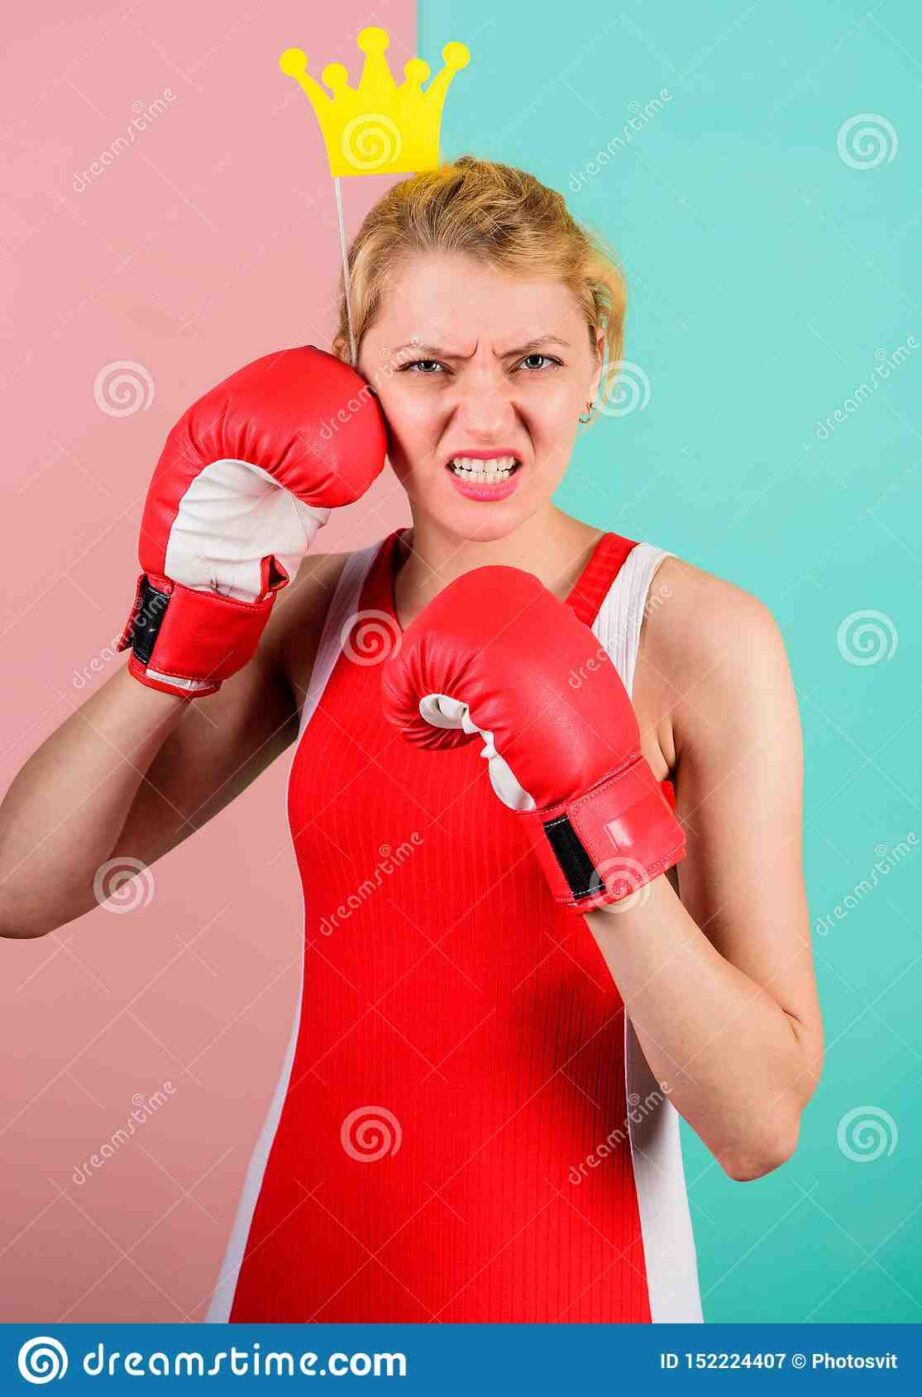 Quel est le meilleur sport de combat pour une fille ?